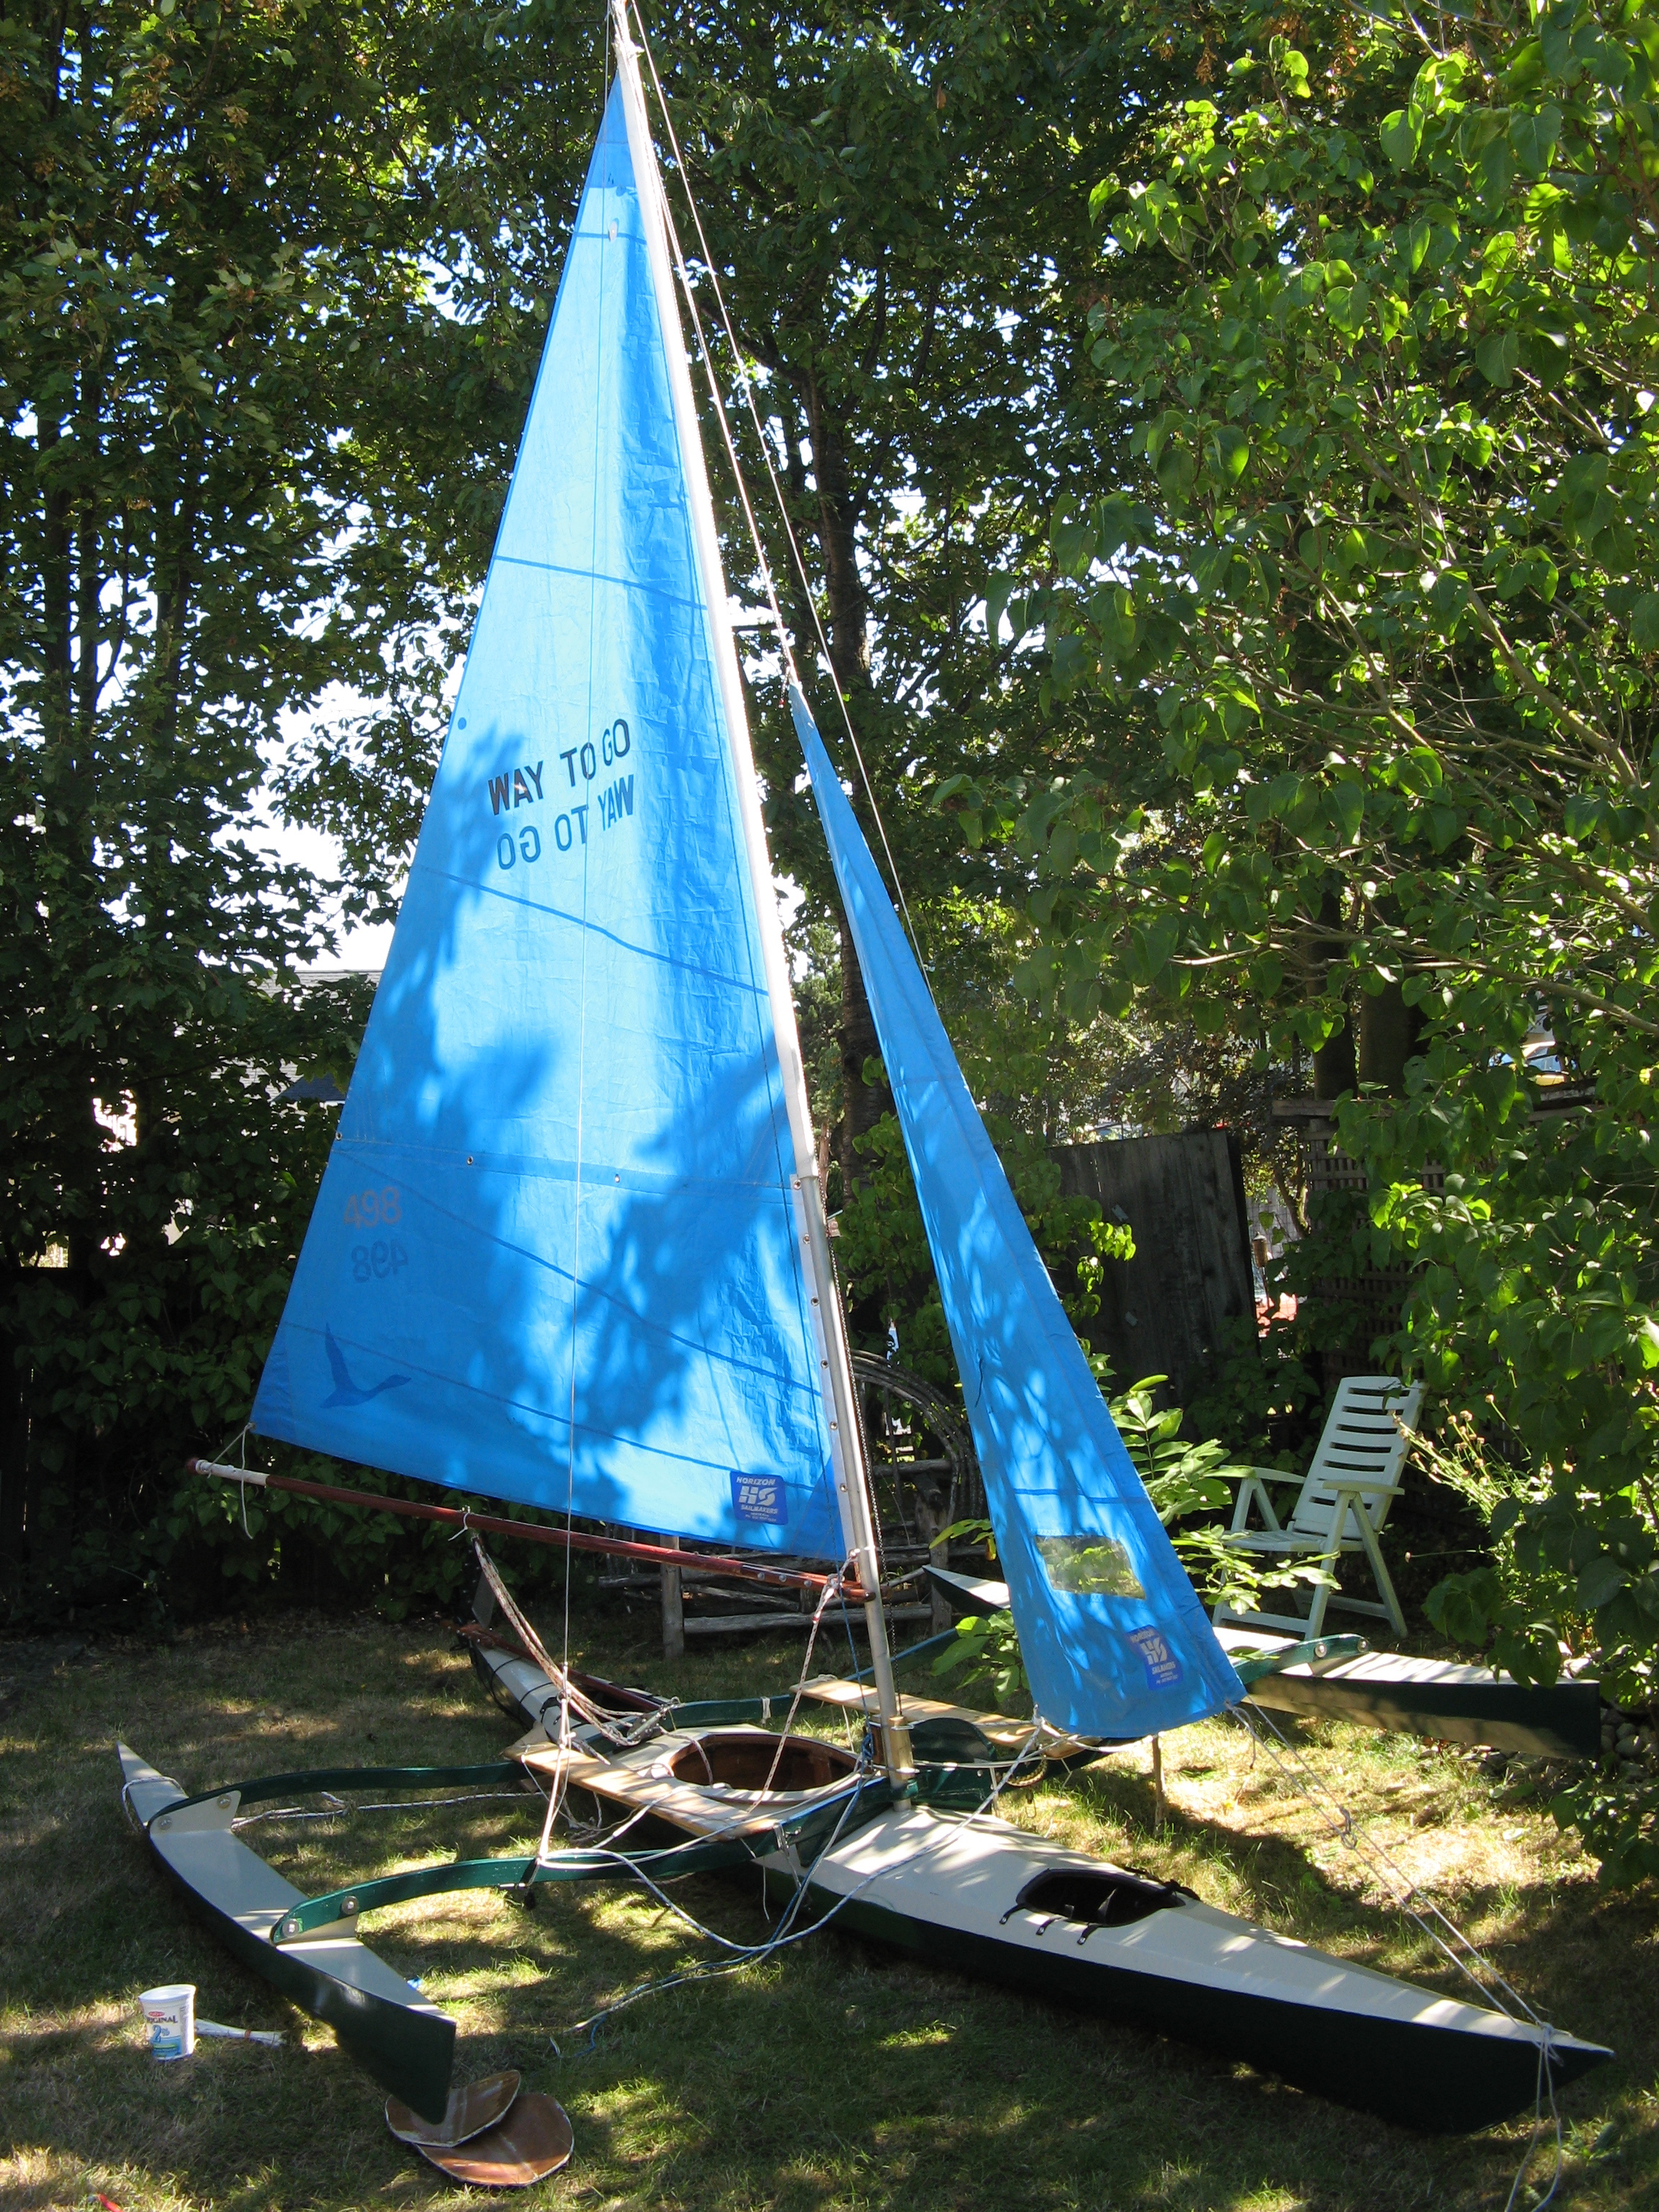 Sailyak rigging